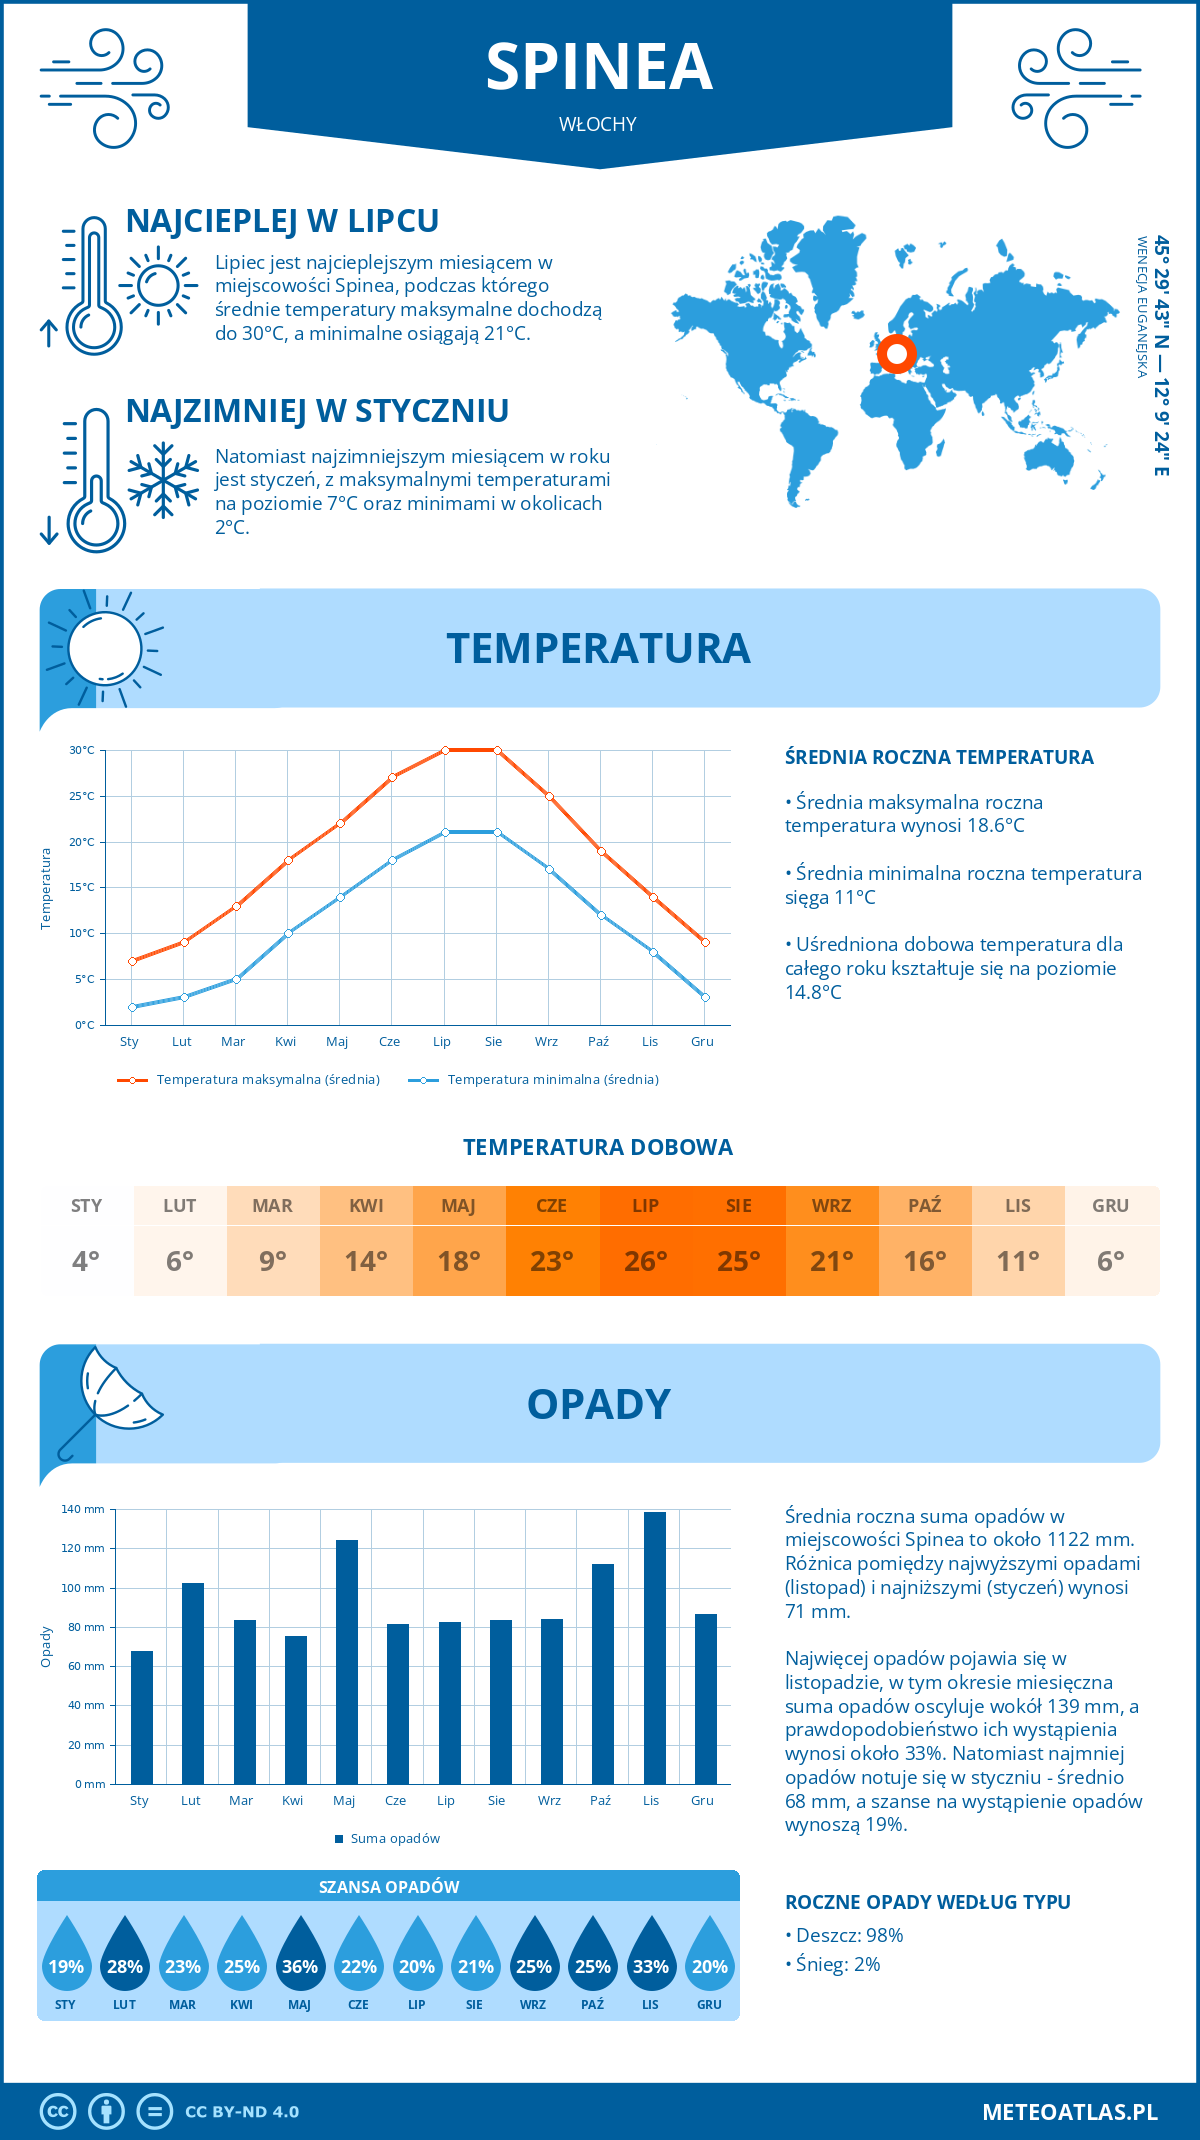 Pogoda Spinea (Włochy). Temperatura oraz opady.